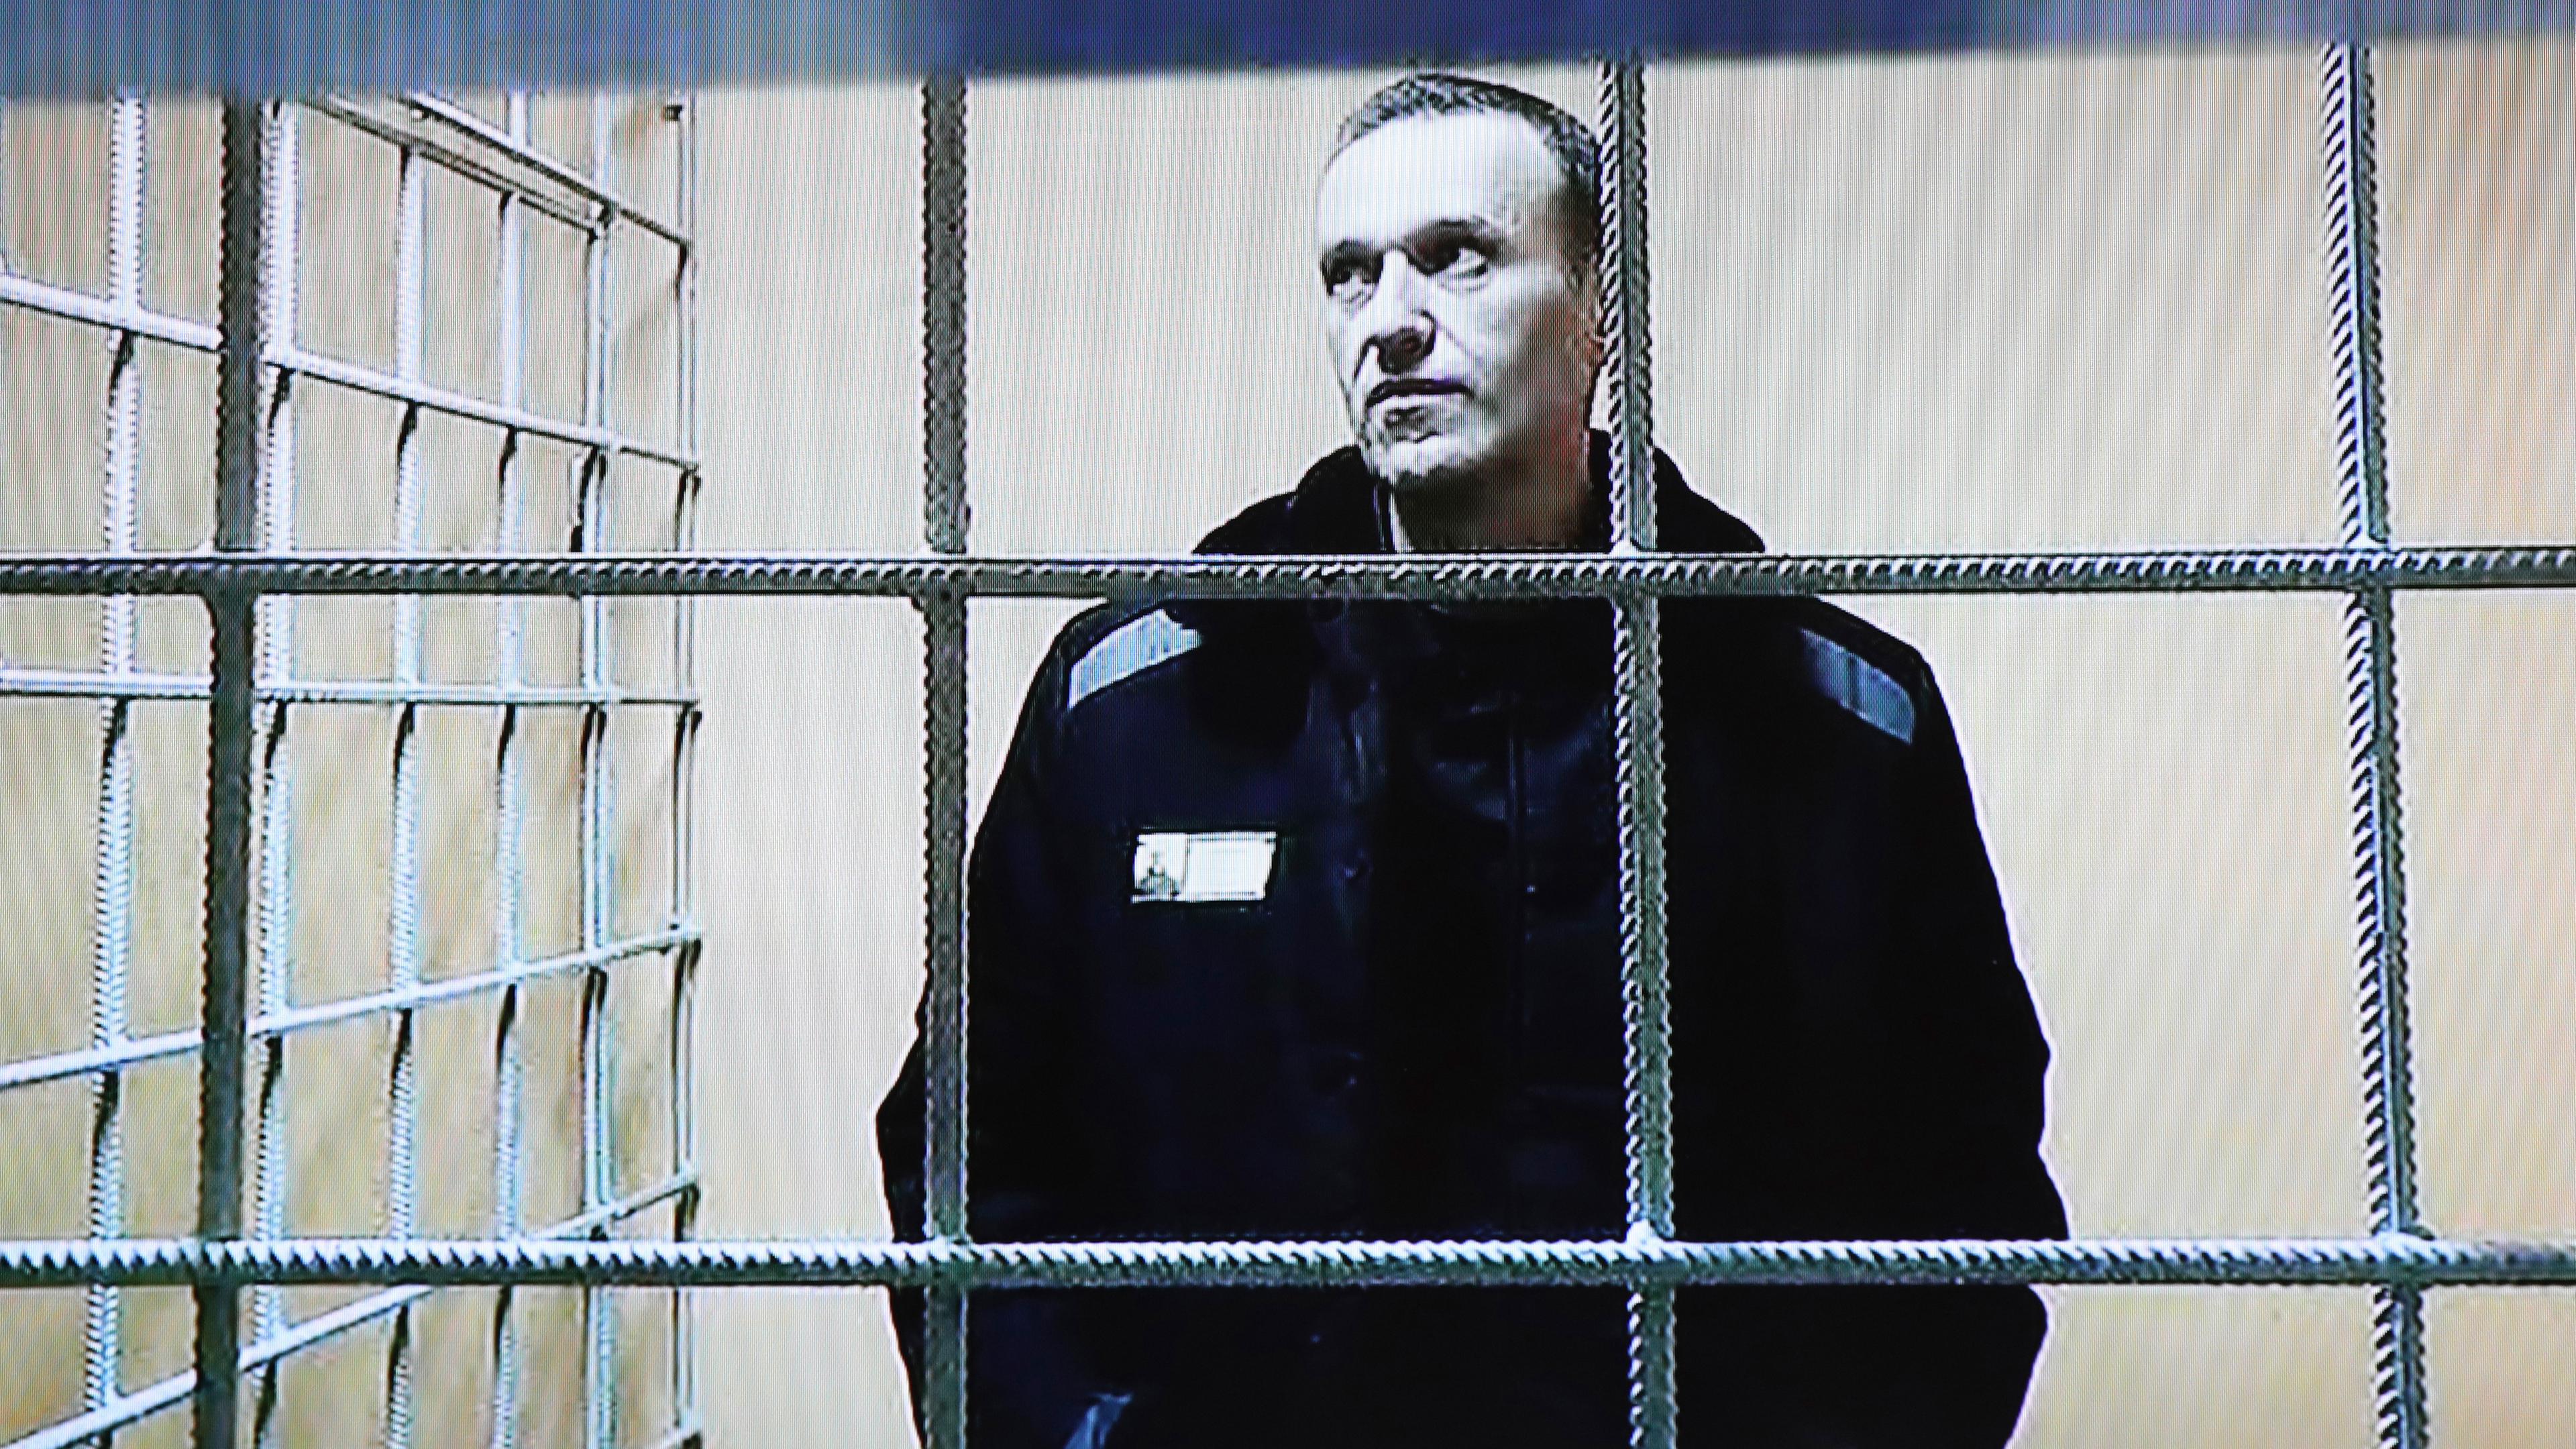 Alexej Nawalny, Oppositionsführer aus Russland, ist während einer Gerichtssitzung per Videoverbindung aus einem Gefängnis zu sehen, aufgenommen am 28.12.2021 in Petushki (Russland)